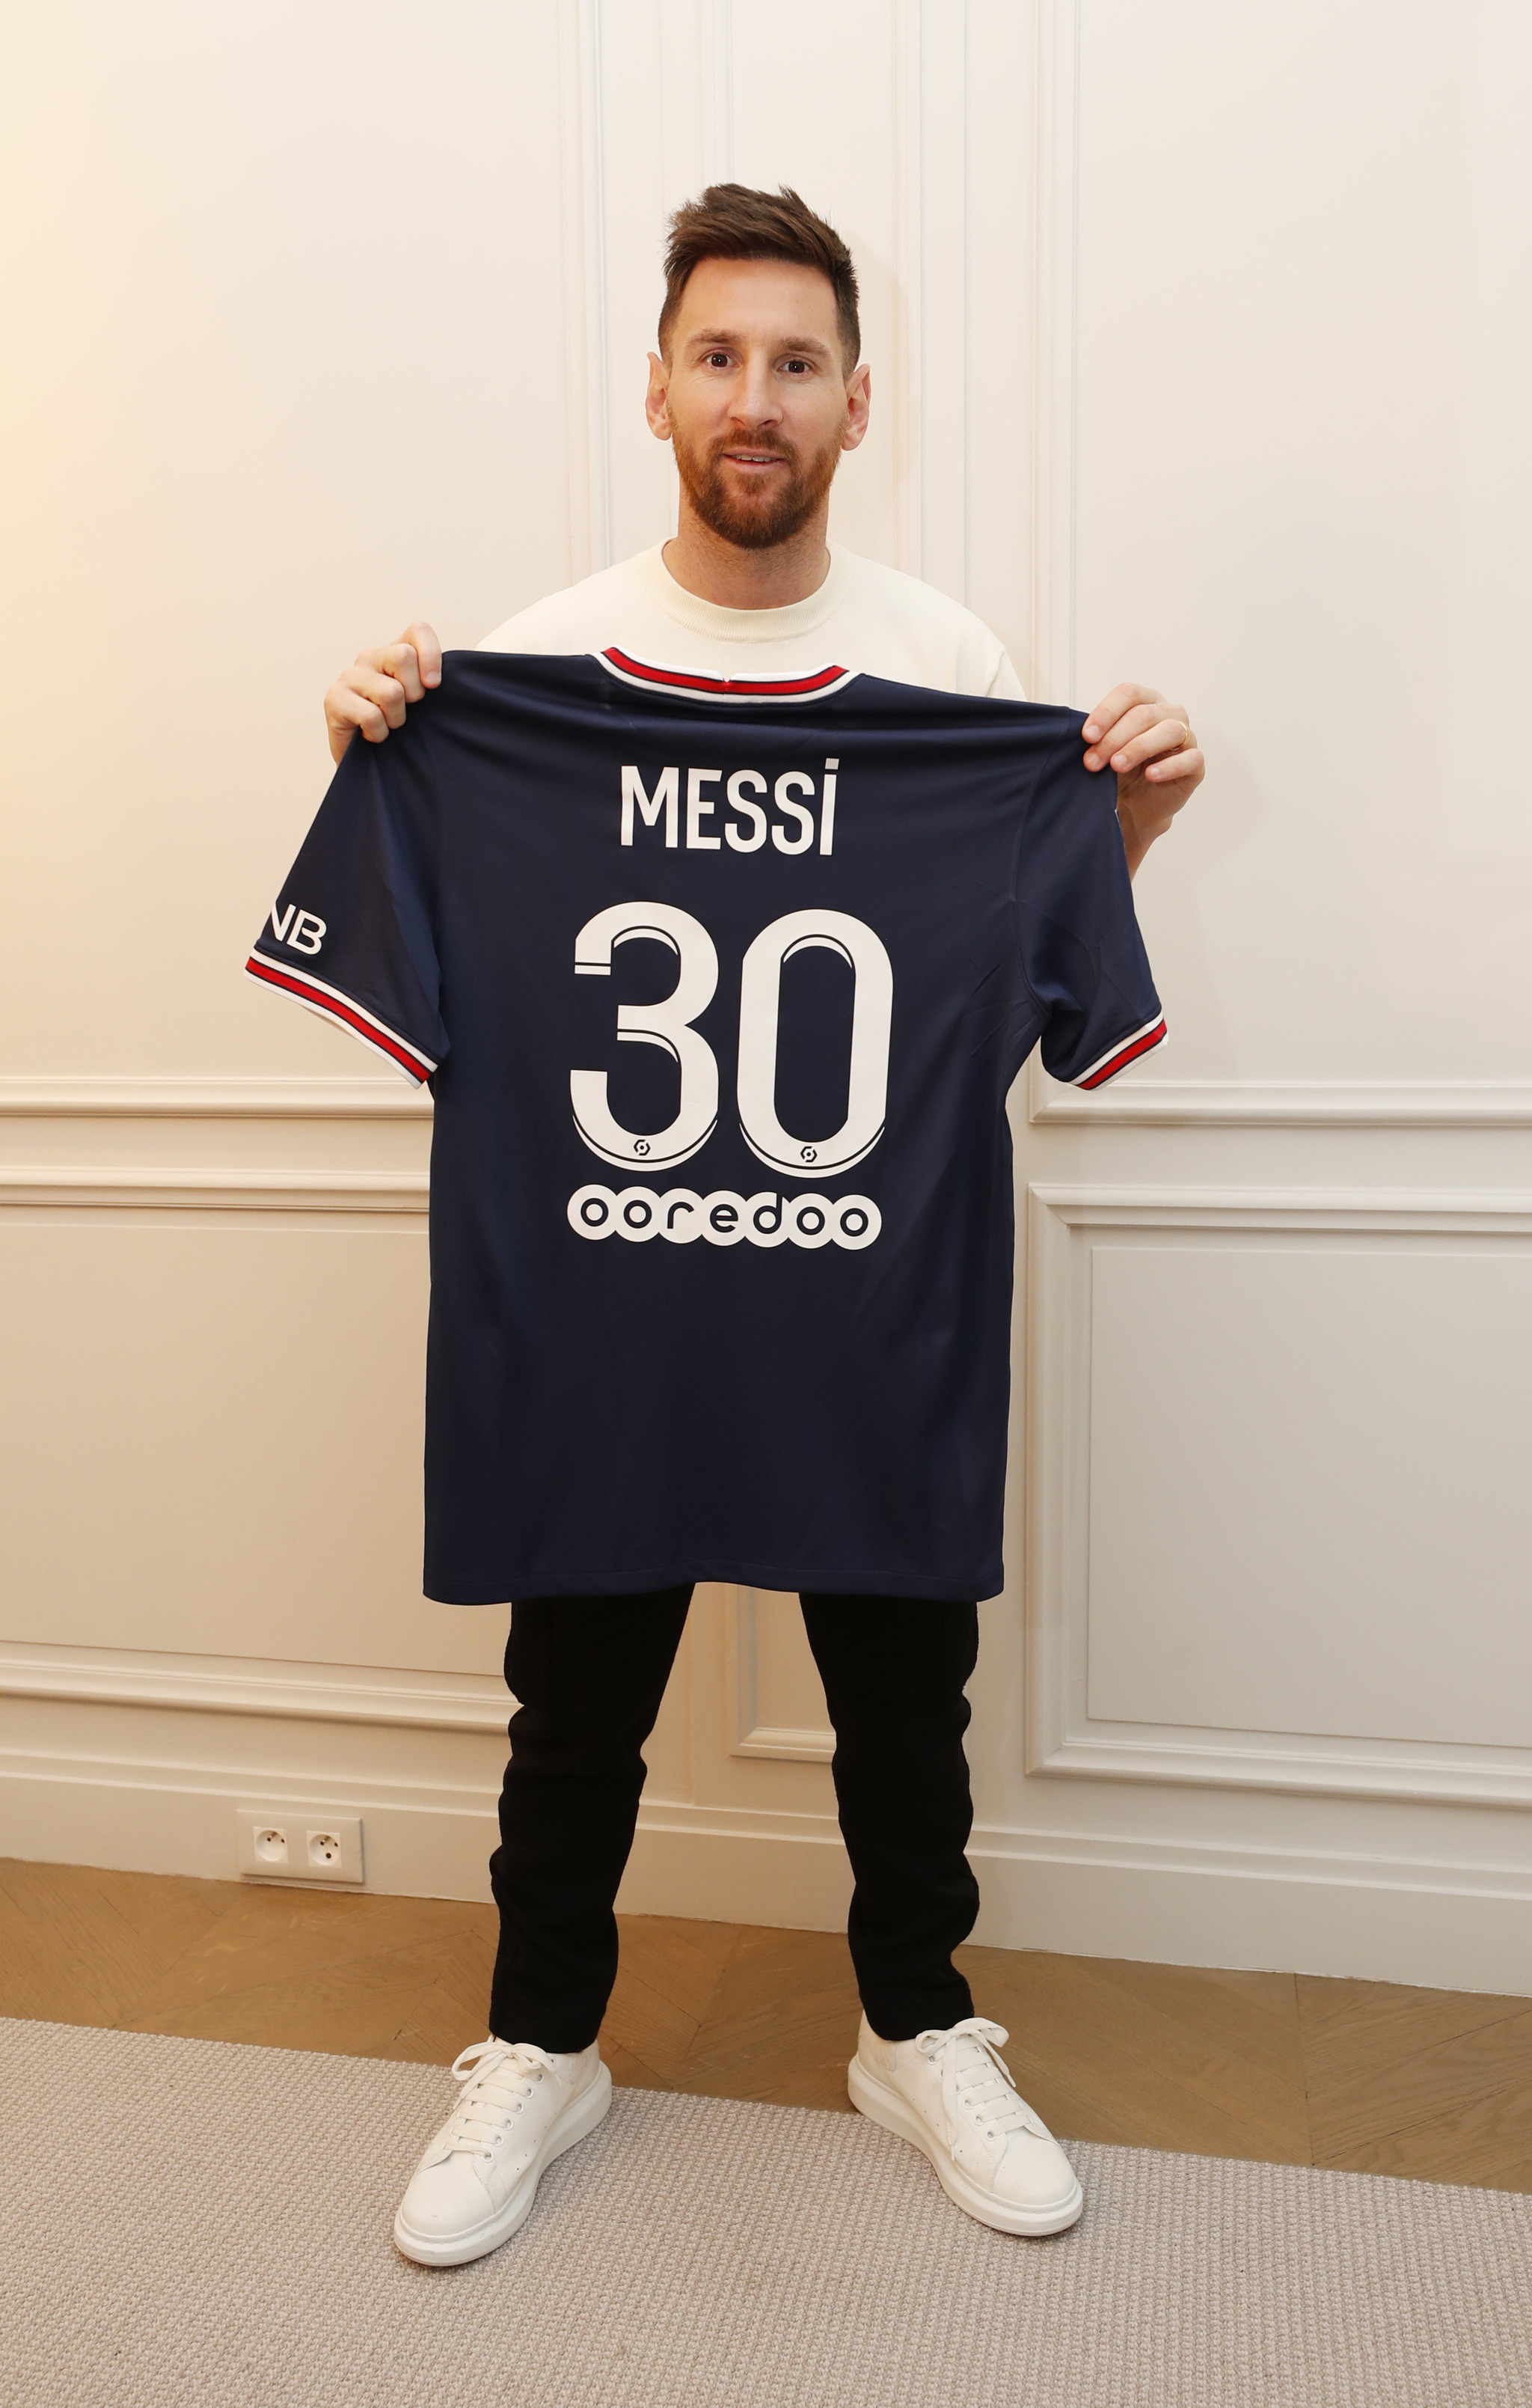 Messi psg jersey